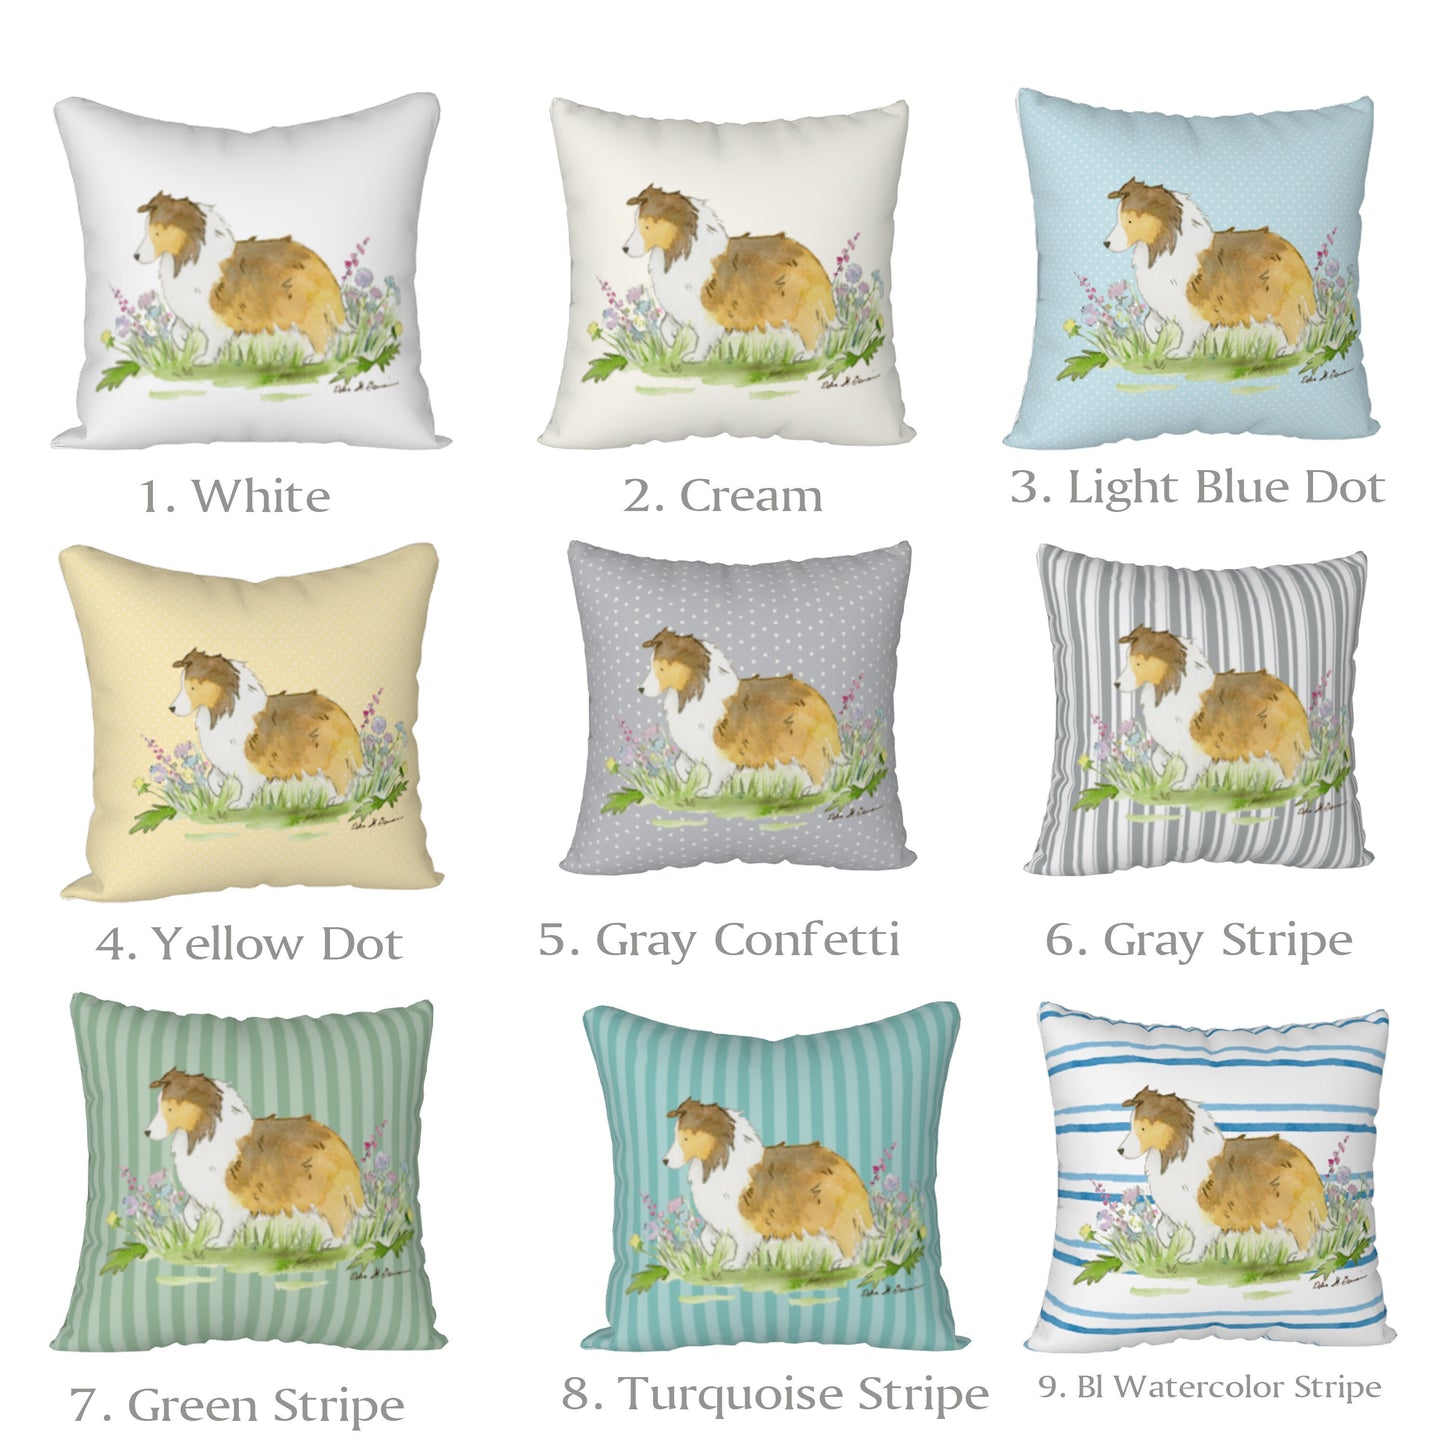 Sable Shetland Sheepdog Pillow Case, Sheltie Pillow Cover, dog decor, 18x18 Pillow Case, 22x22 Pillow Case, Sheltie Gift, Sheltie Decor